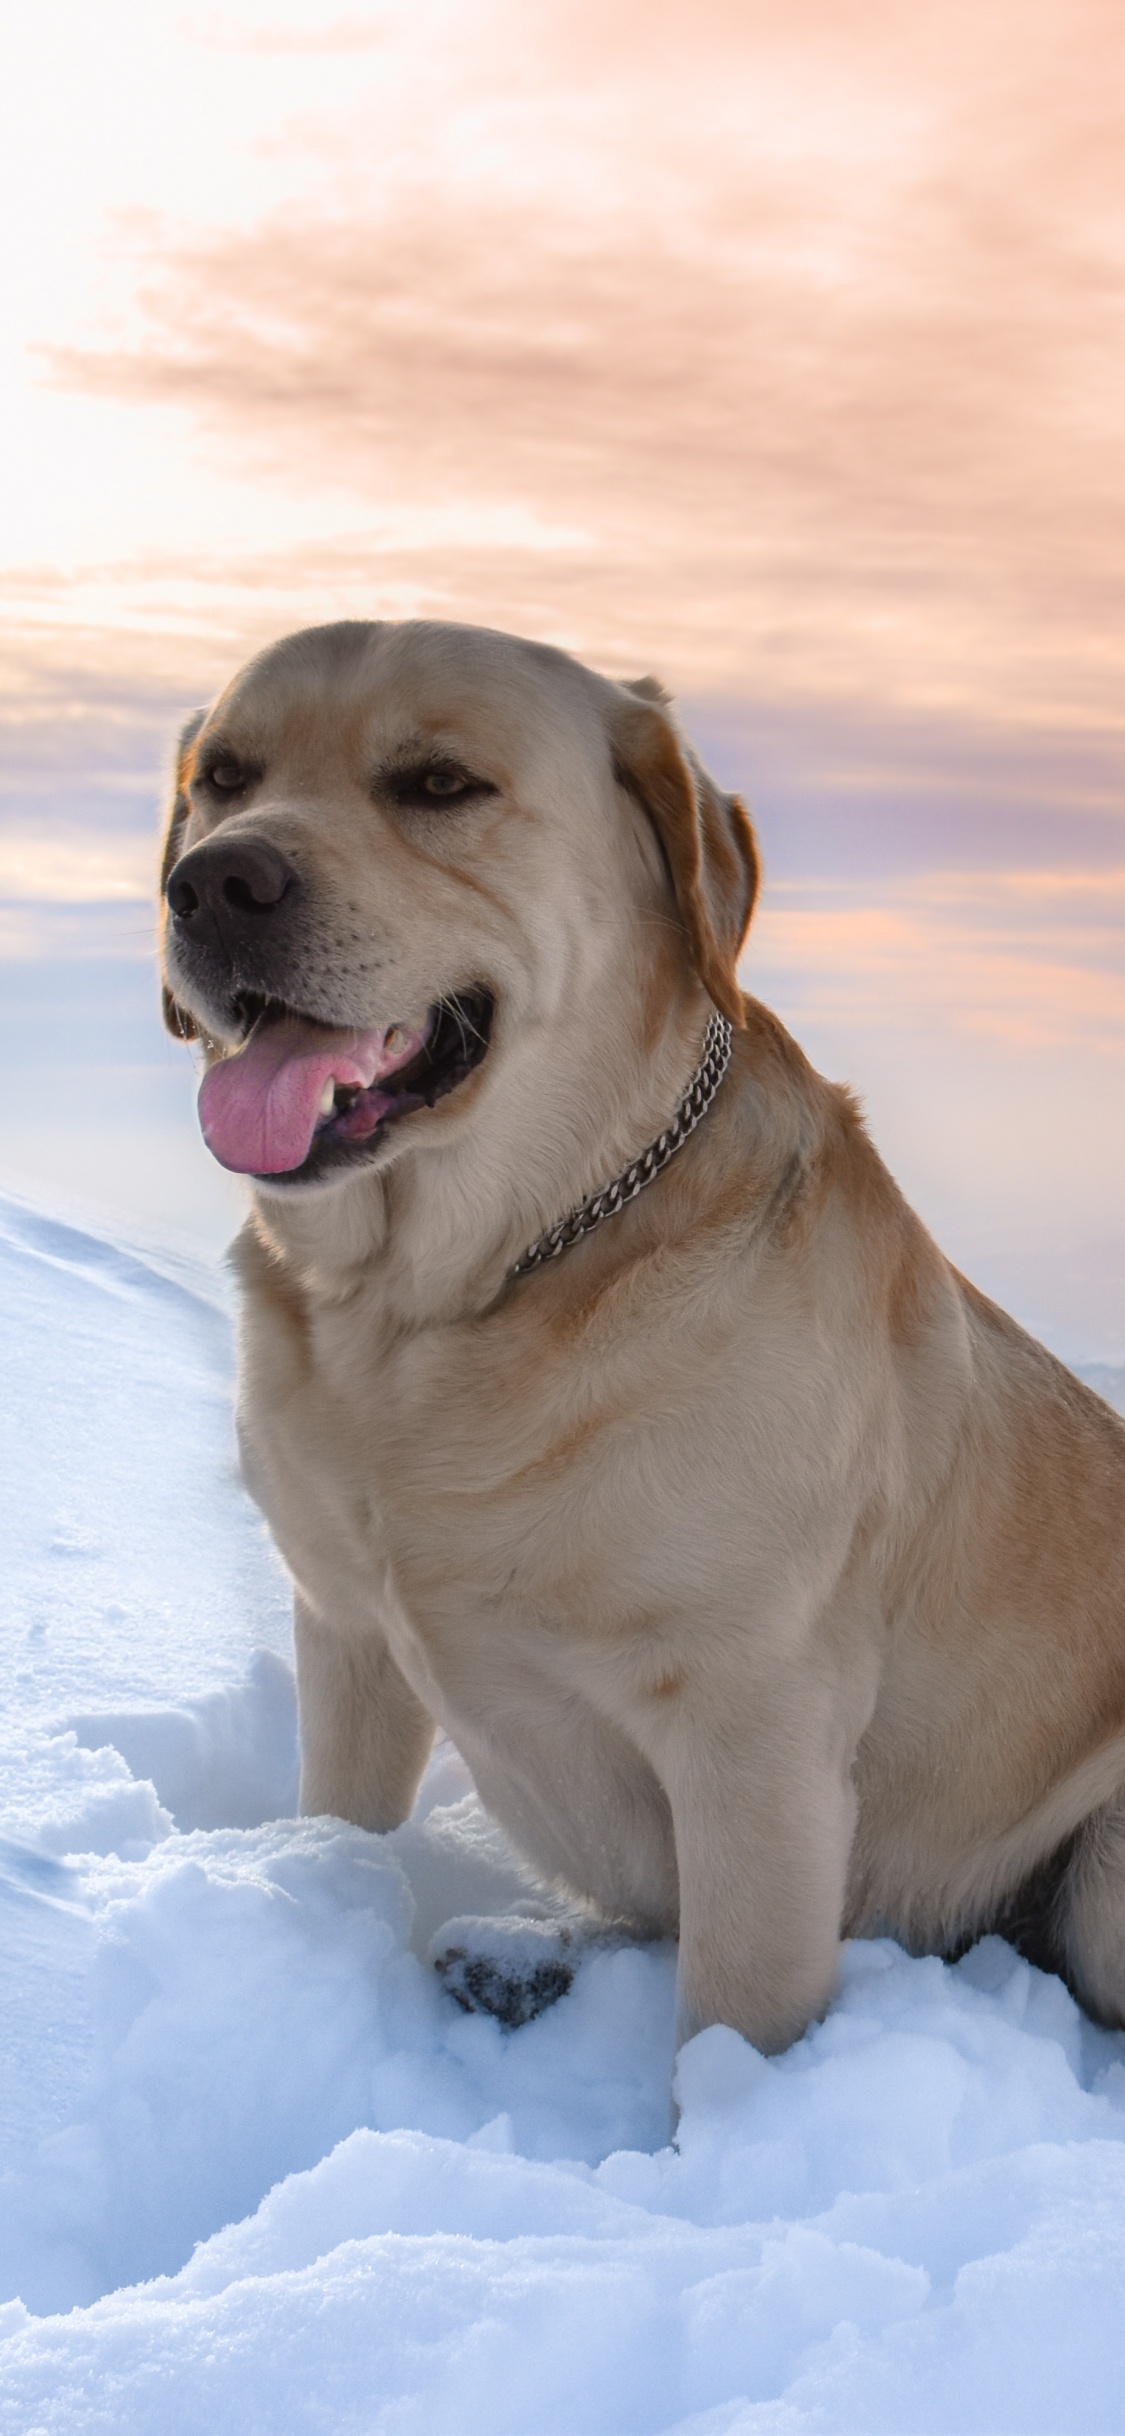 拉布拉多犬, 品种的狗, 黄金猎犬, 狗喜欢哺乳动物, 顶级掠食者 壁纸 1125x2436 允许